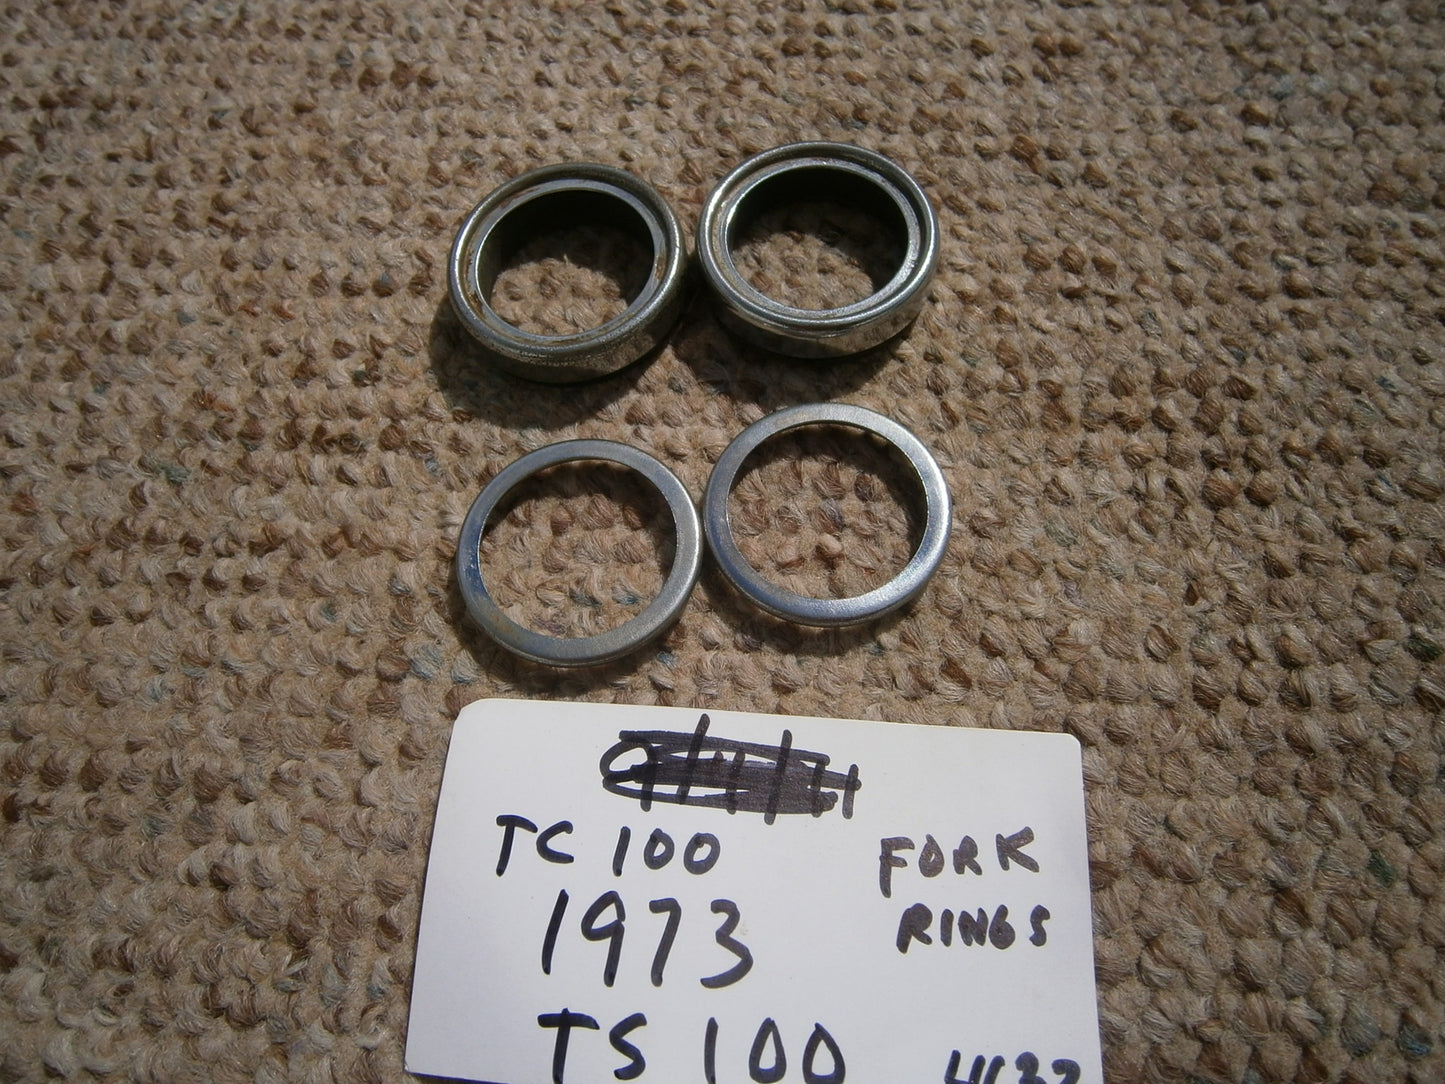 Suzuki TC TS 90 fork rings sku 4632